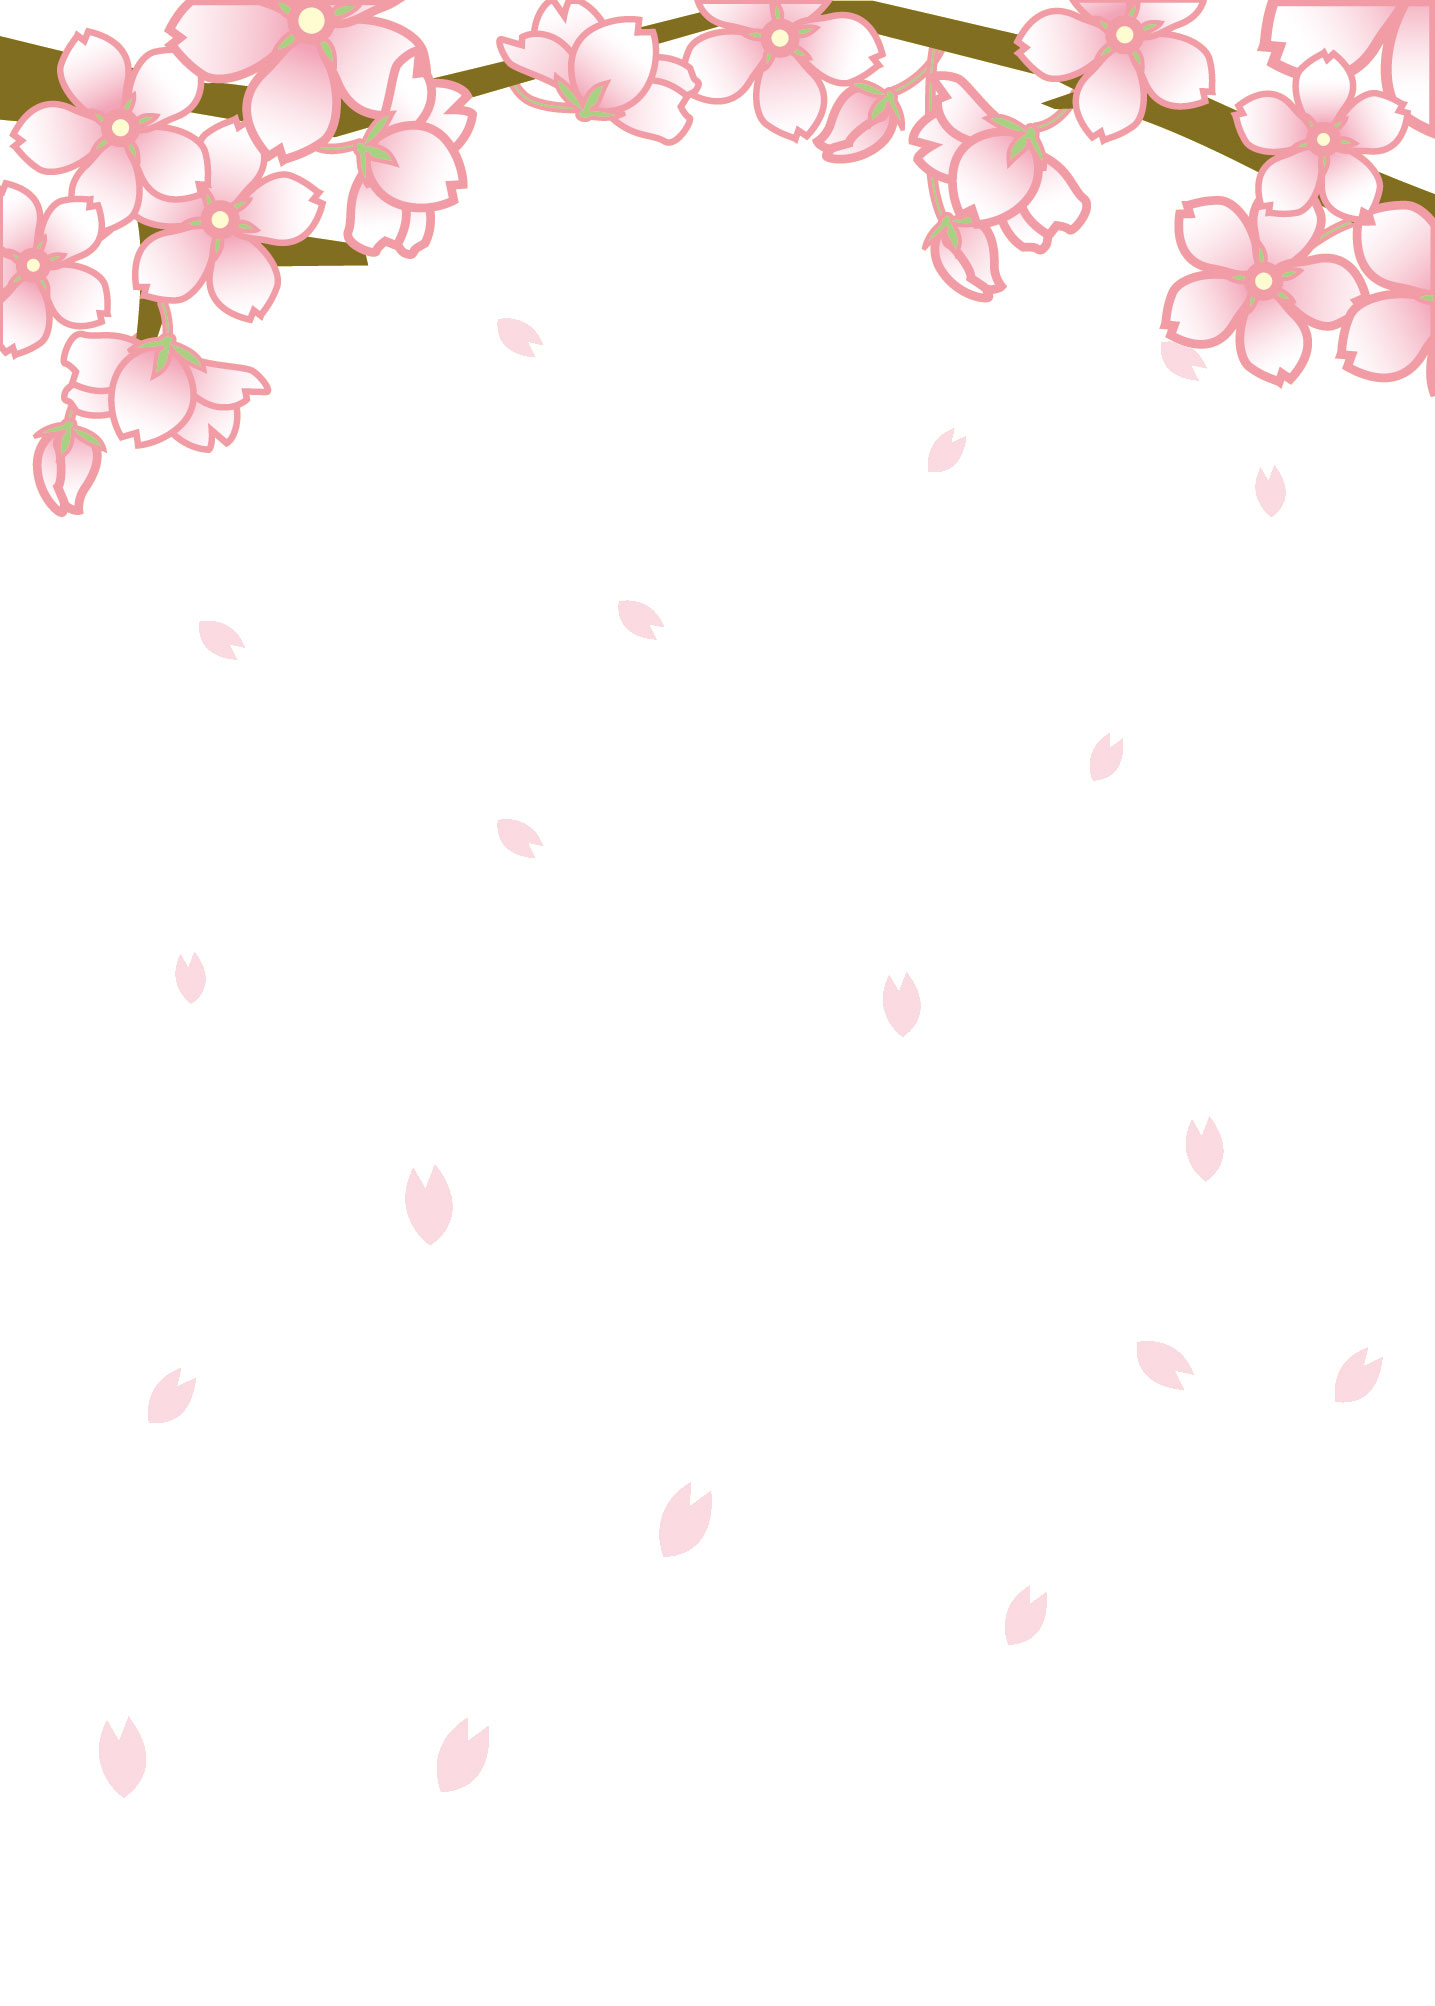 さくら 桜 のイラスト 画像no 014 舞い散る桜 壁紙にも 無料のフリー素材集 百花繚乱